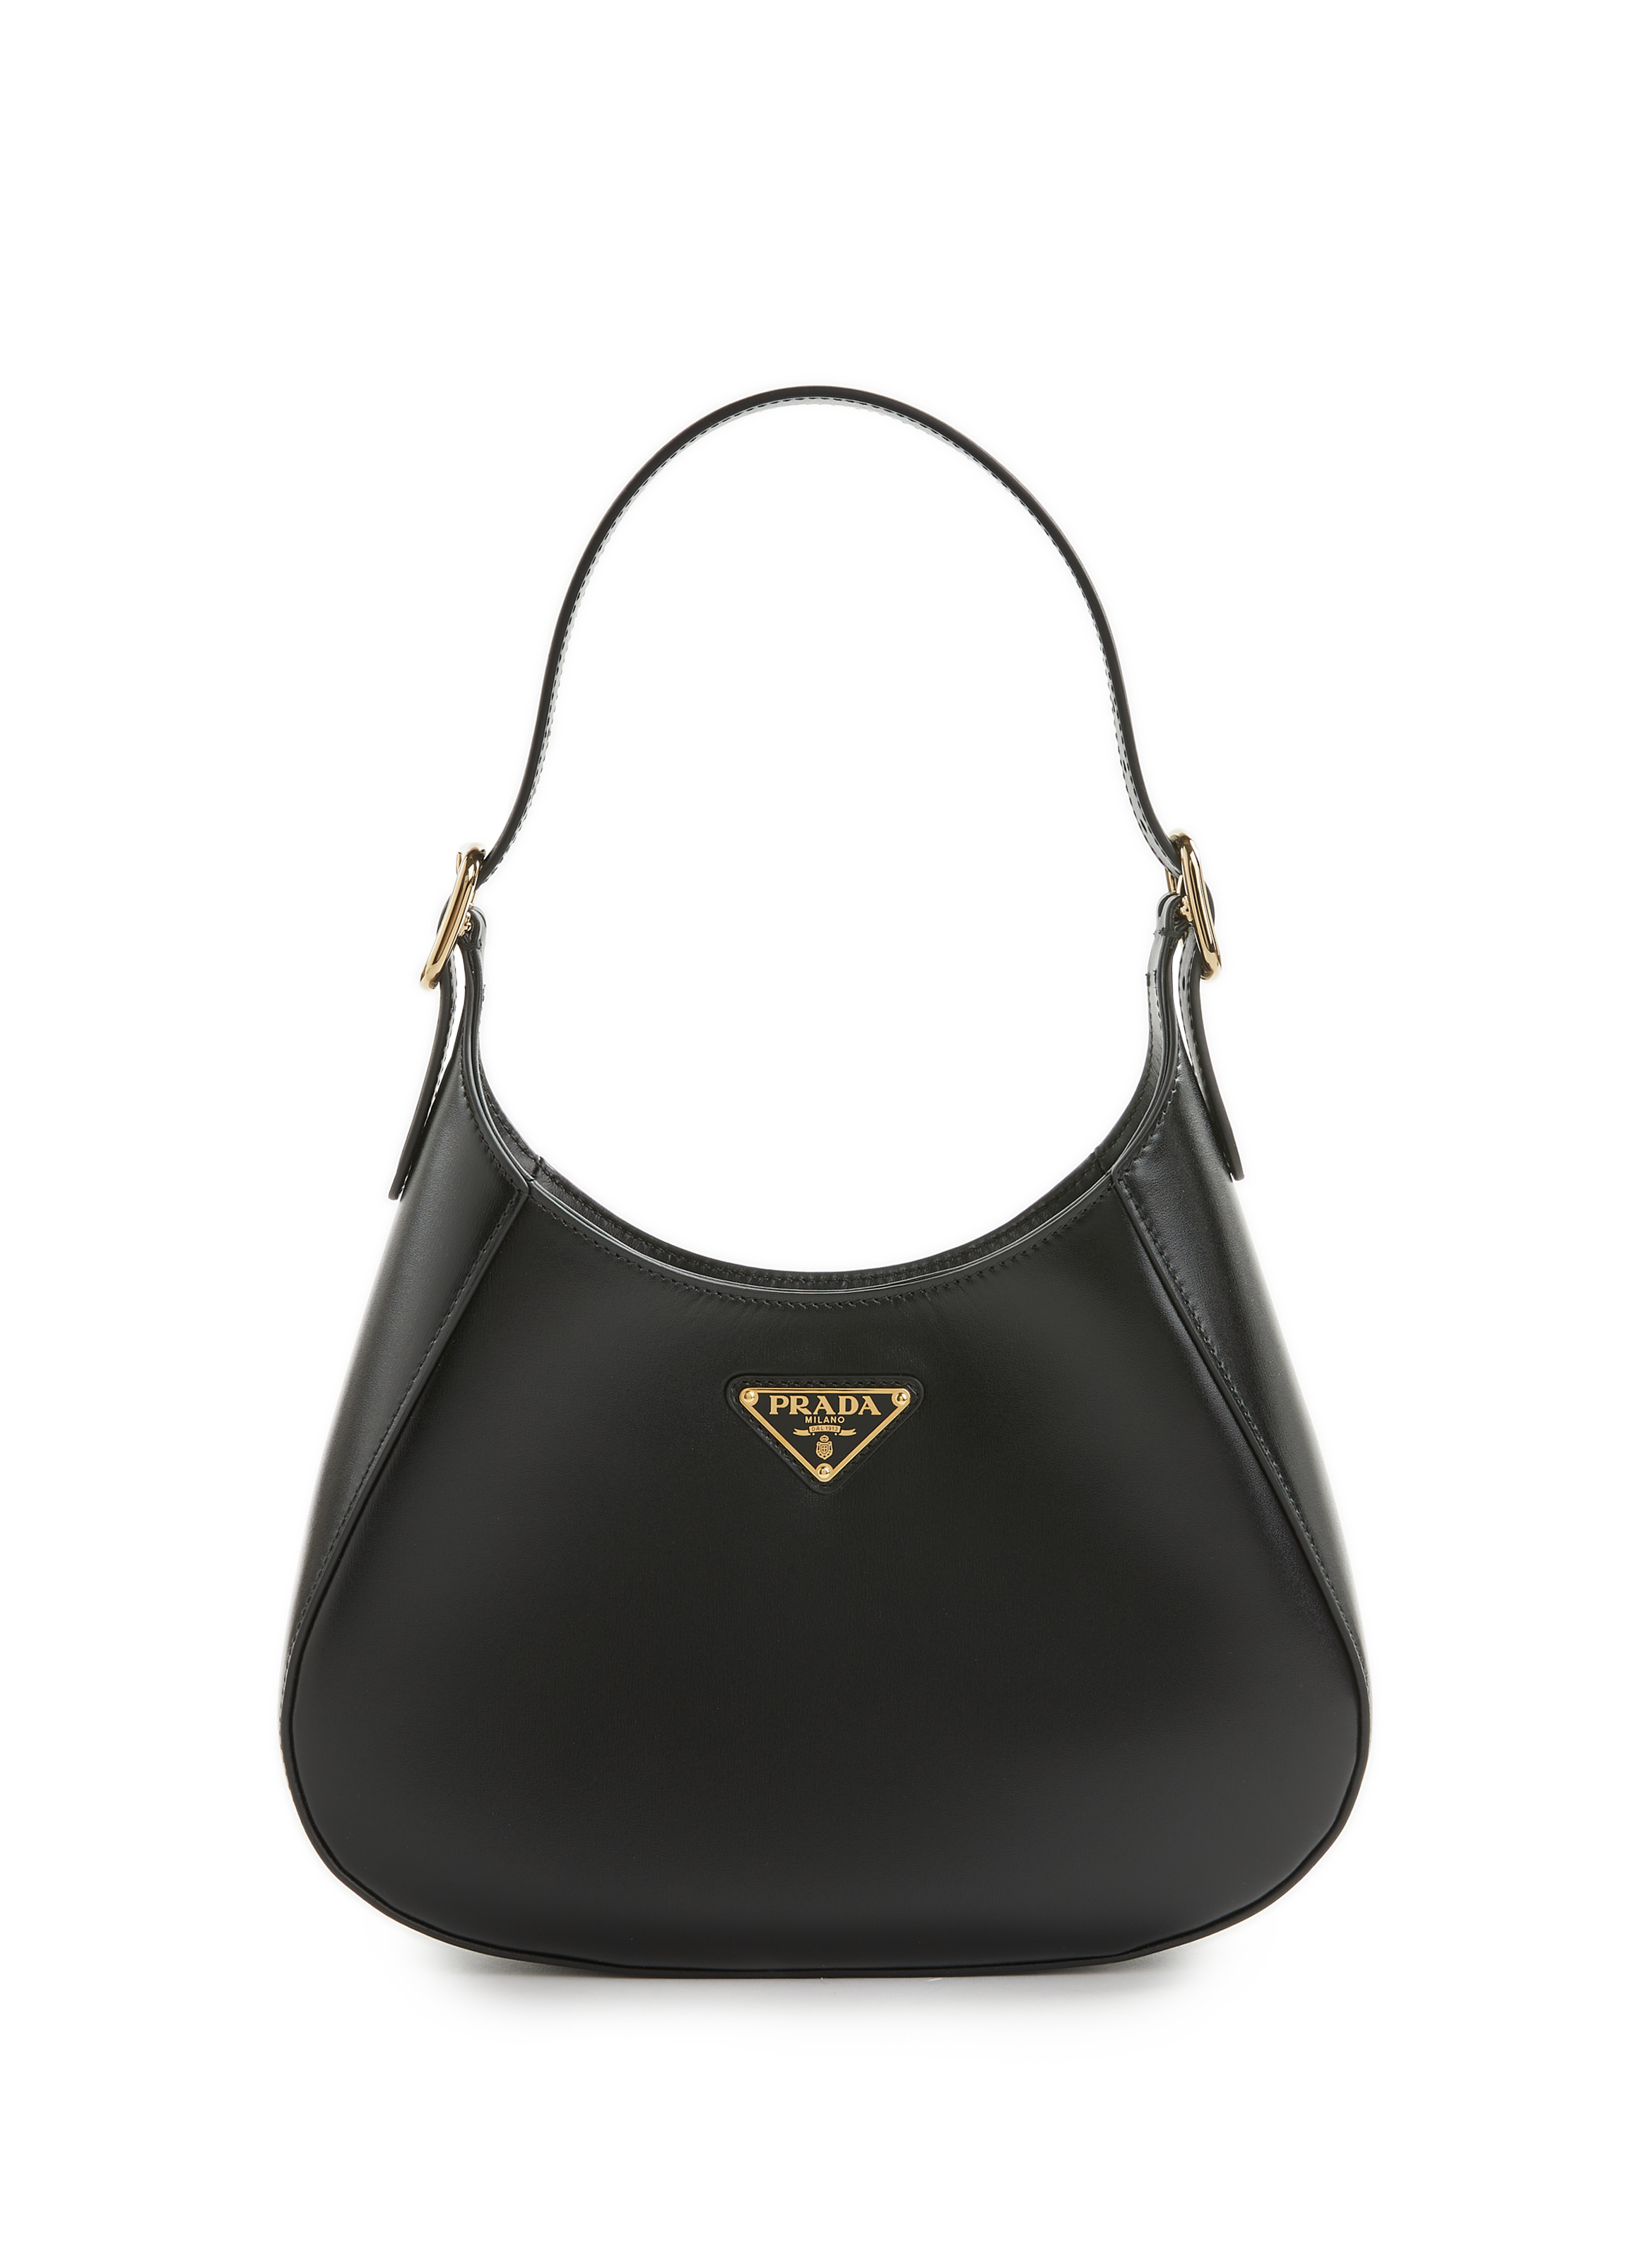 Prada Black Saffiano Lux Medium Shopper Tote Bag ○ Labellov ○ Buy and Sell  Authentic Luxury